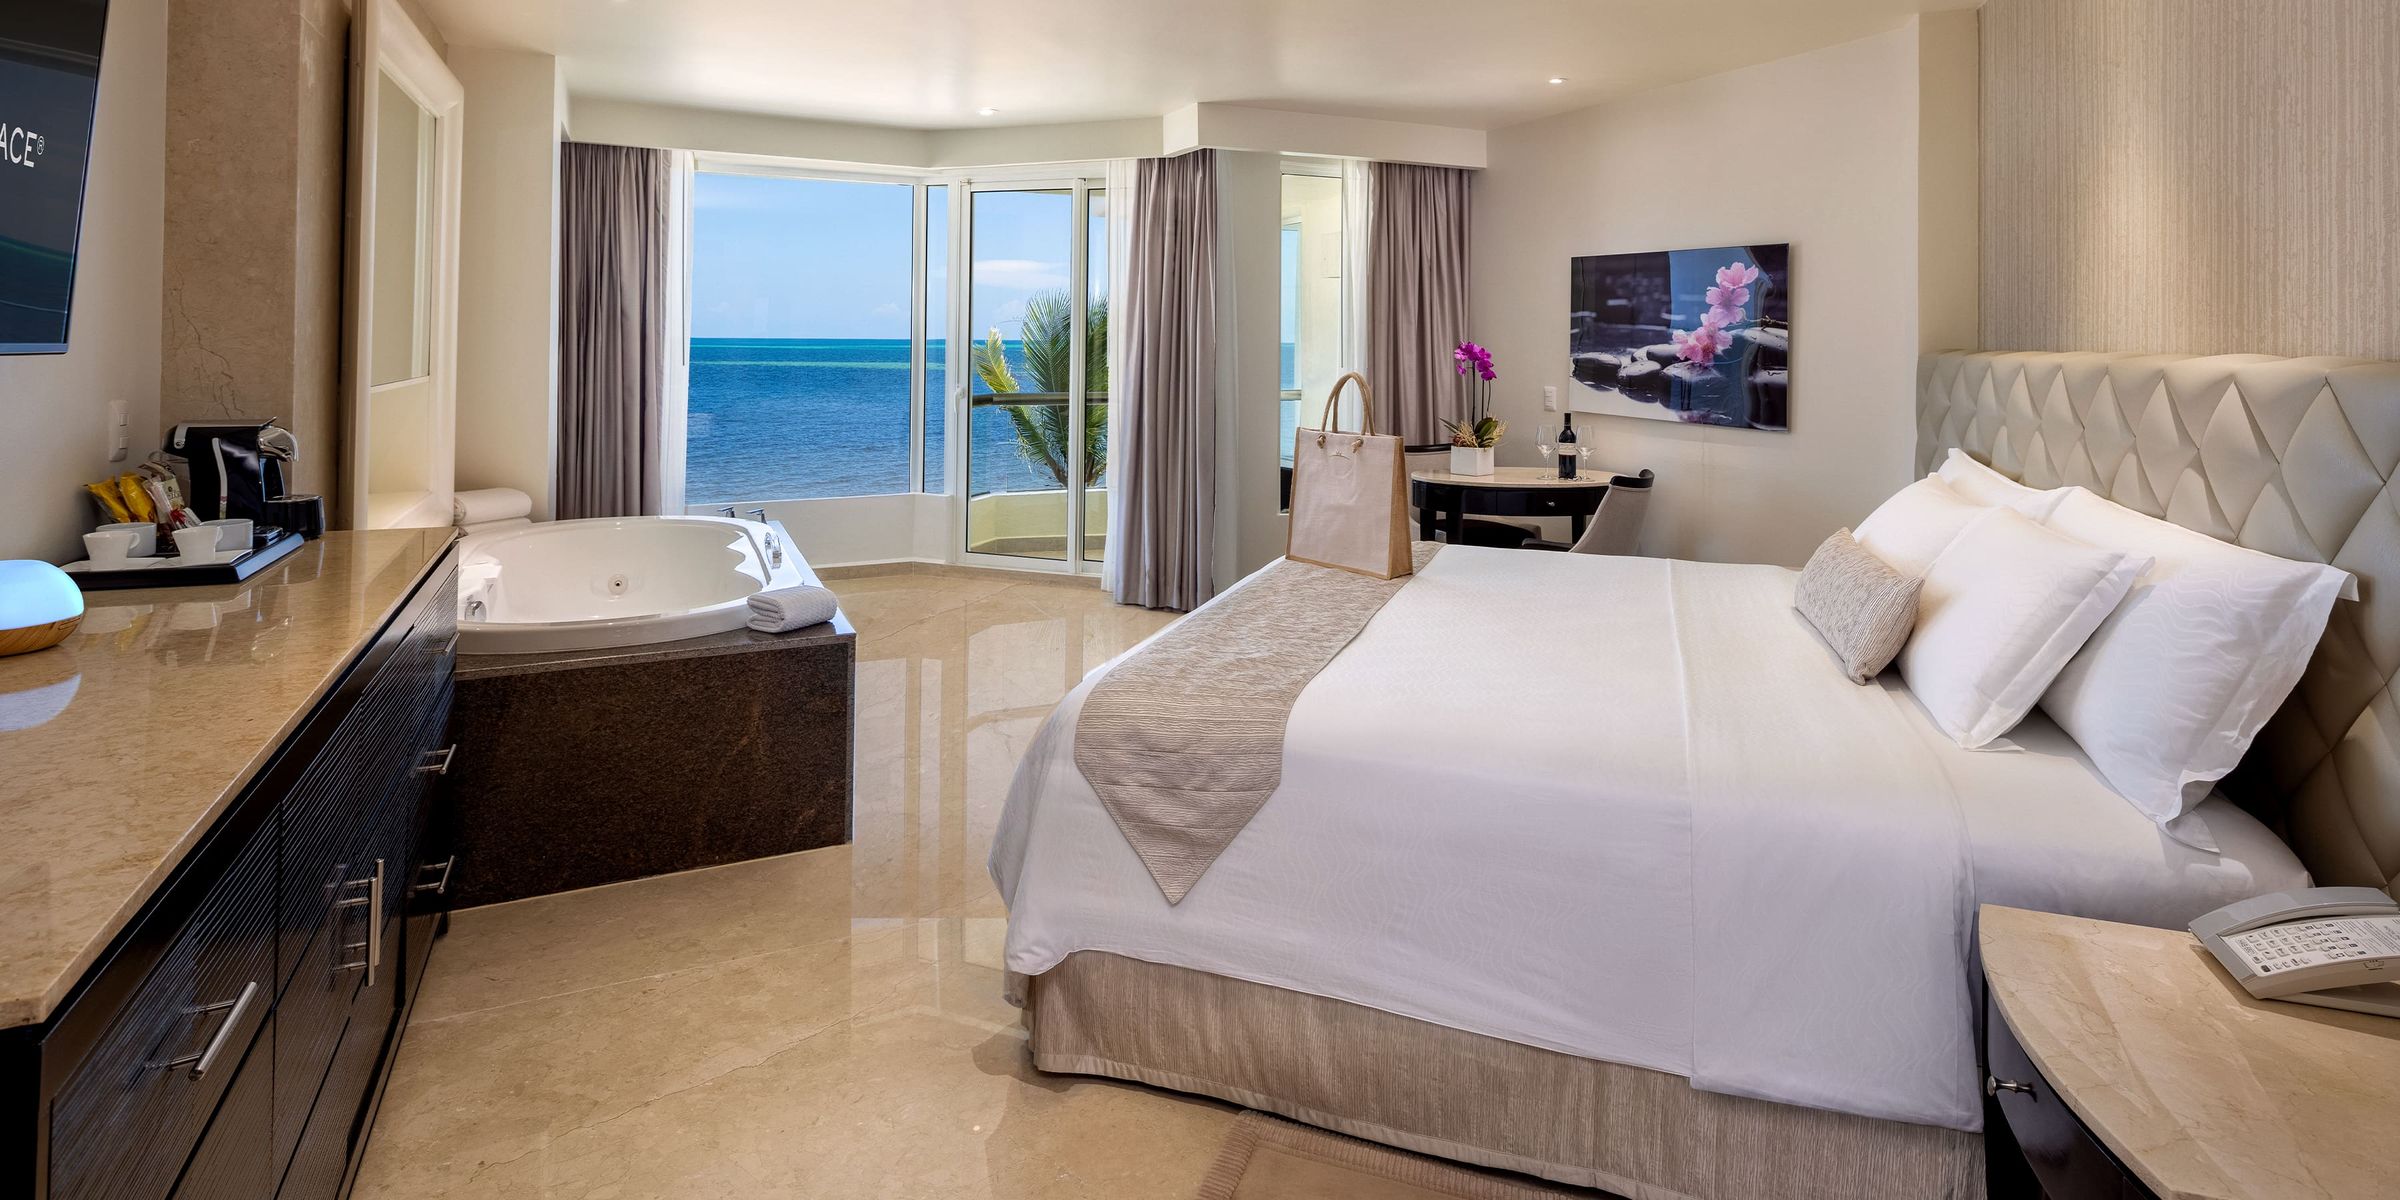 Rooms at Moon Palace Resort Cancun